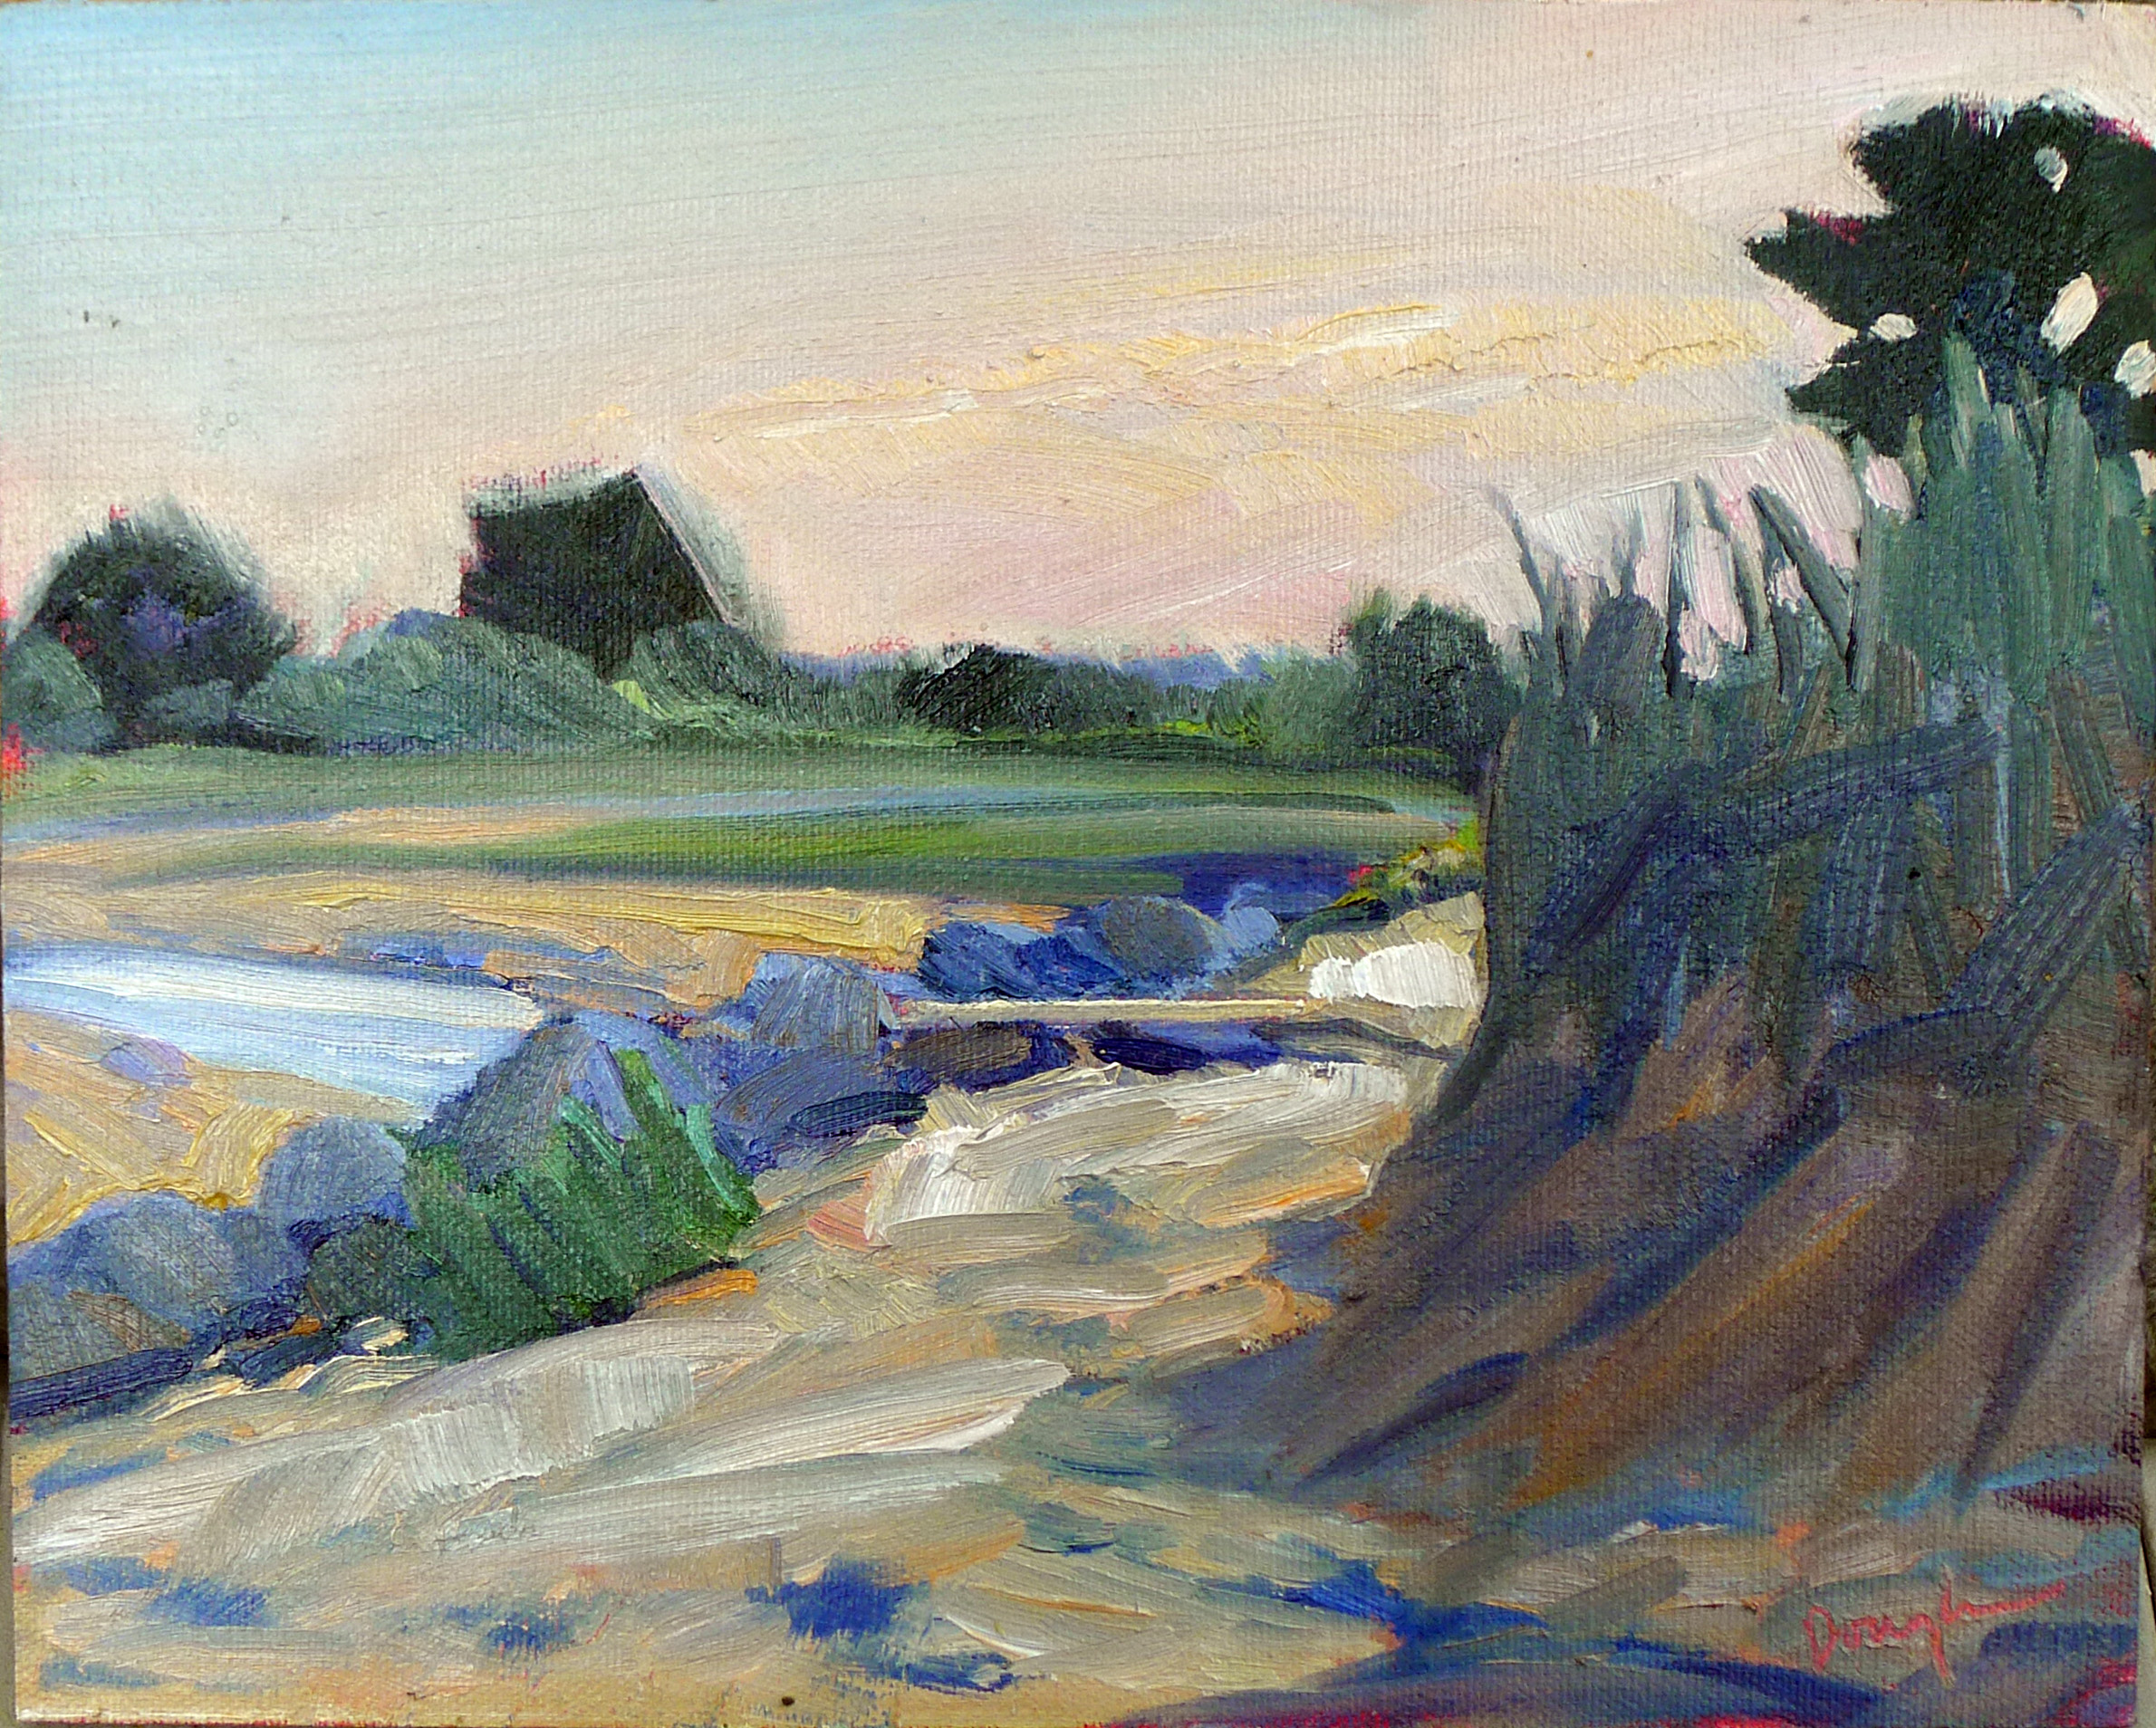 "Beach erosion," oil on canvasboard, available through Ocean Park Association.